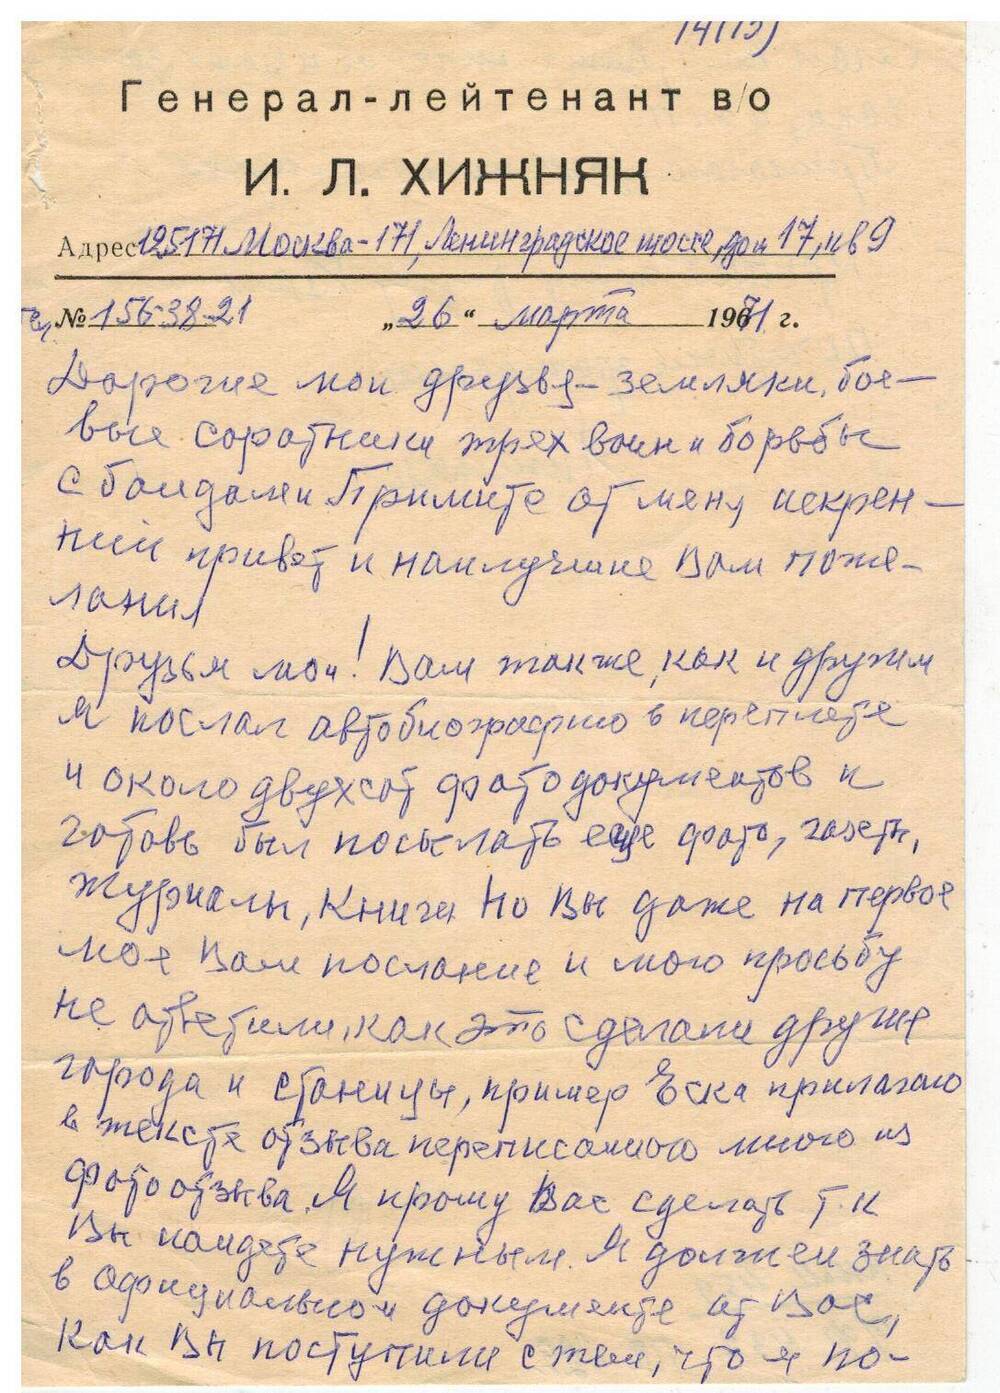 Письмо Хижняка И.Л. Кореновскому музею на именной бумаге